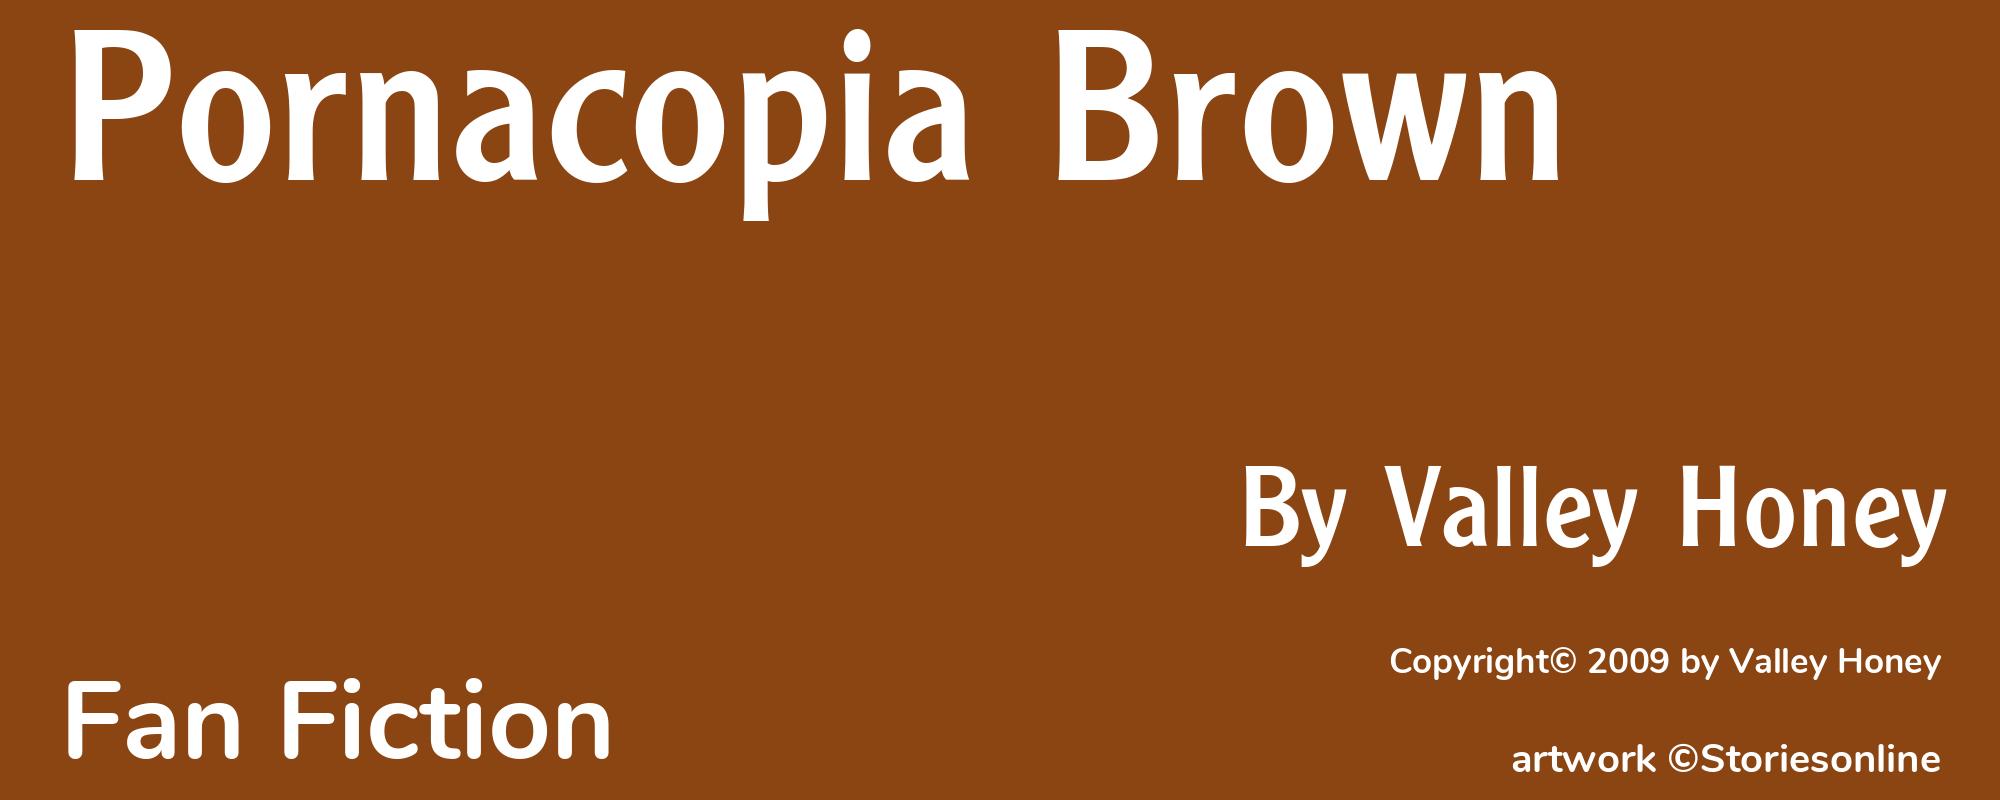 Pornacopia Brown - Cover